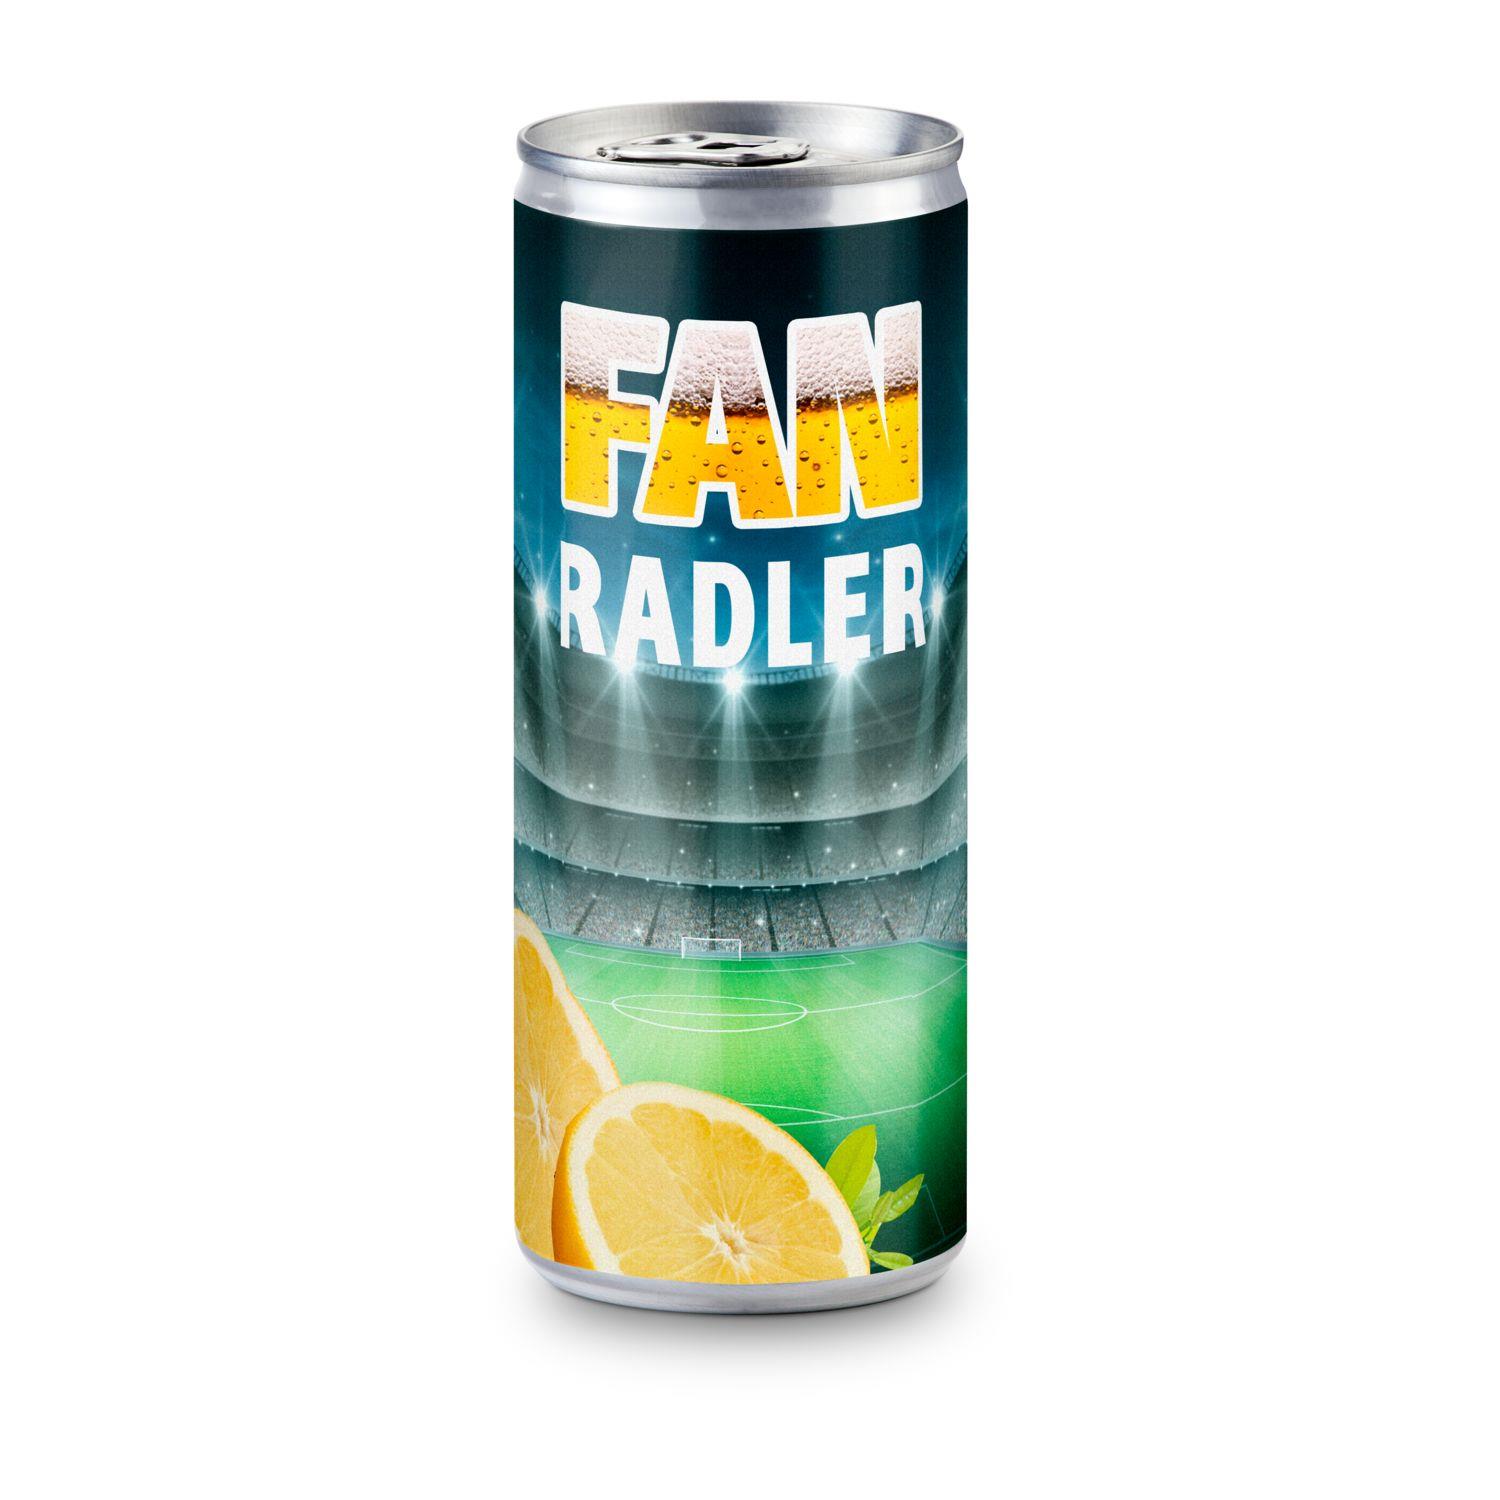 Radler - Bier und Zitronenlimonade - Folien-Etikett